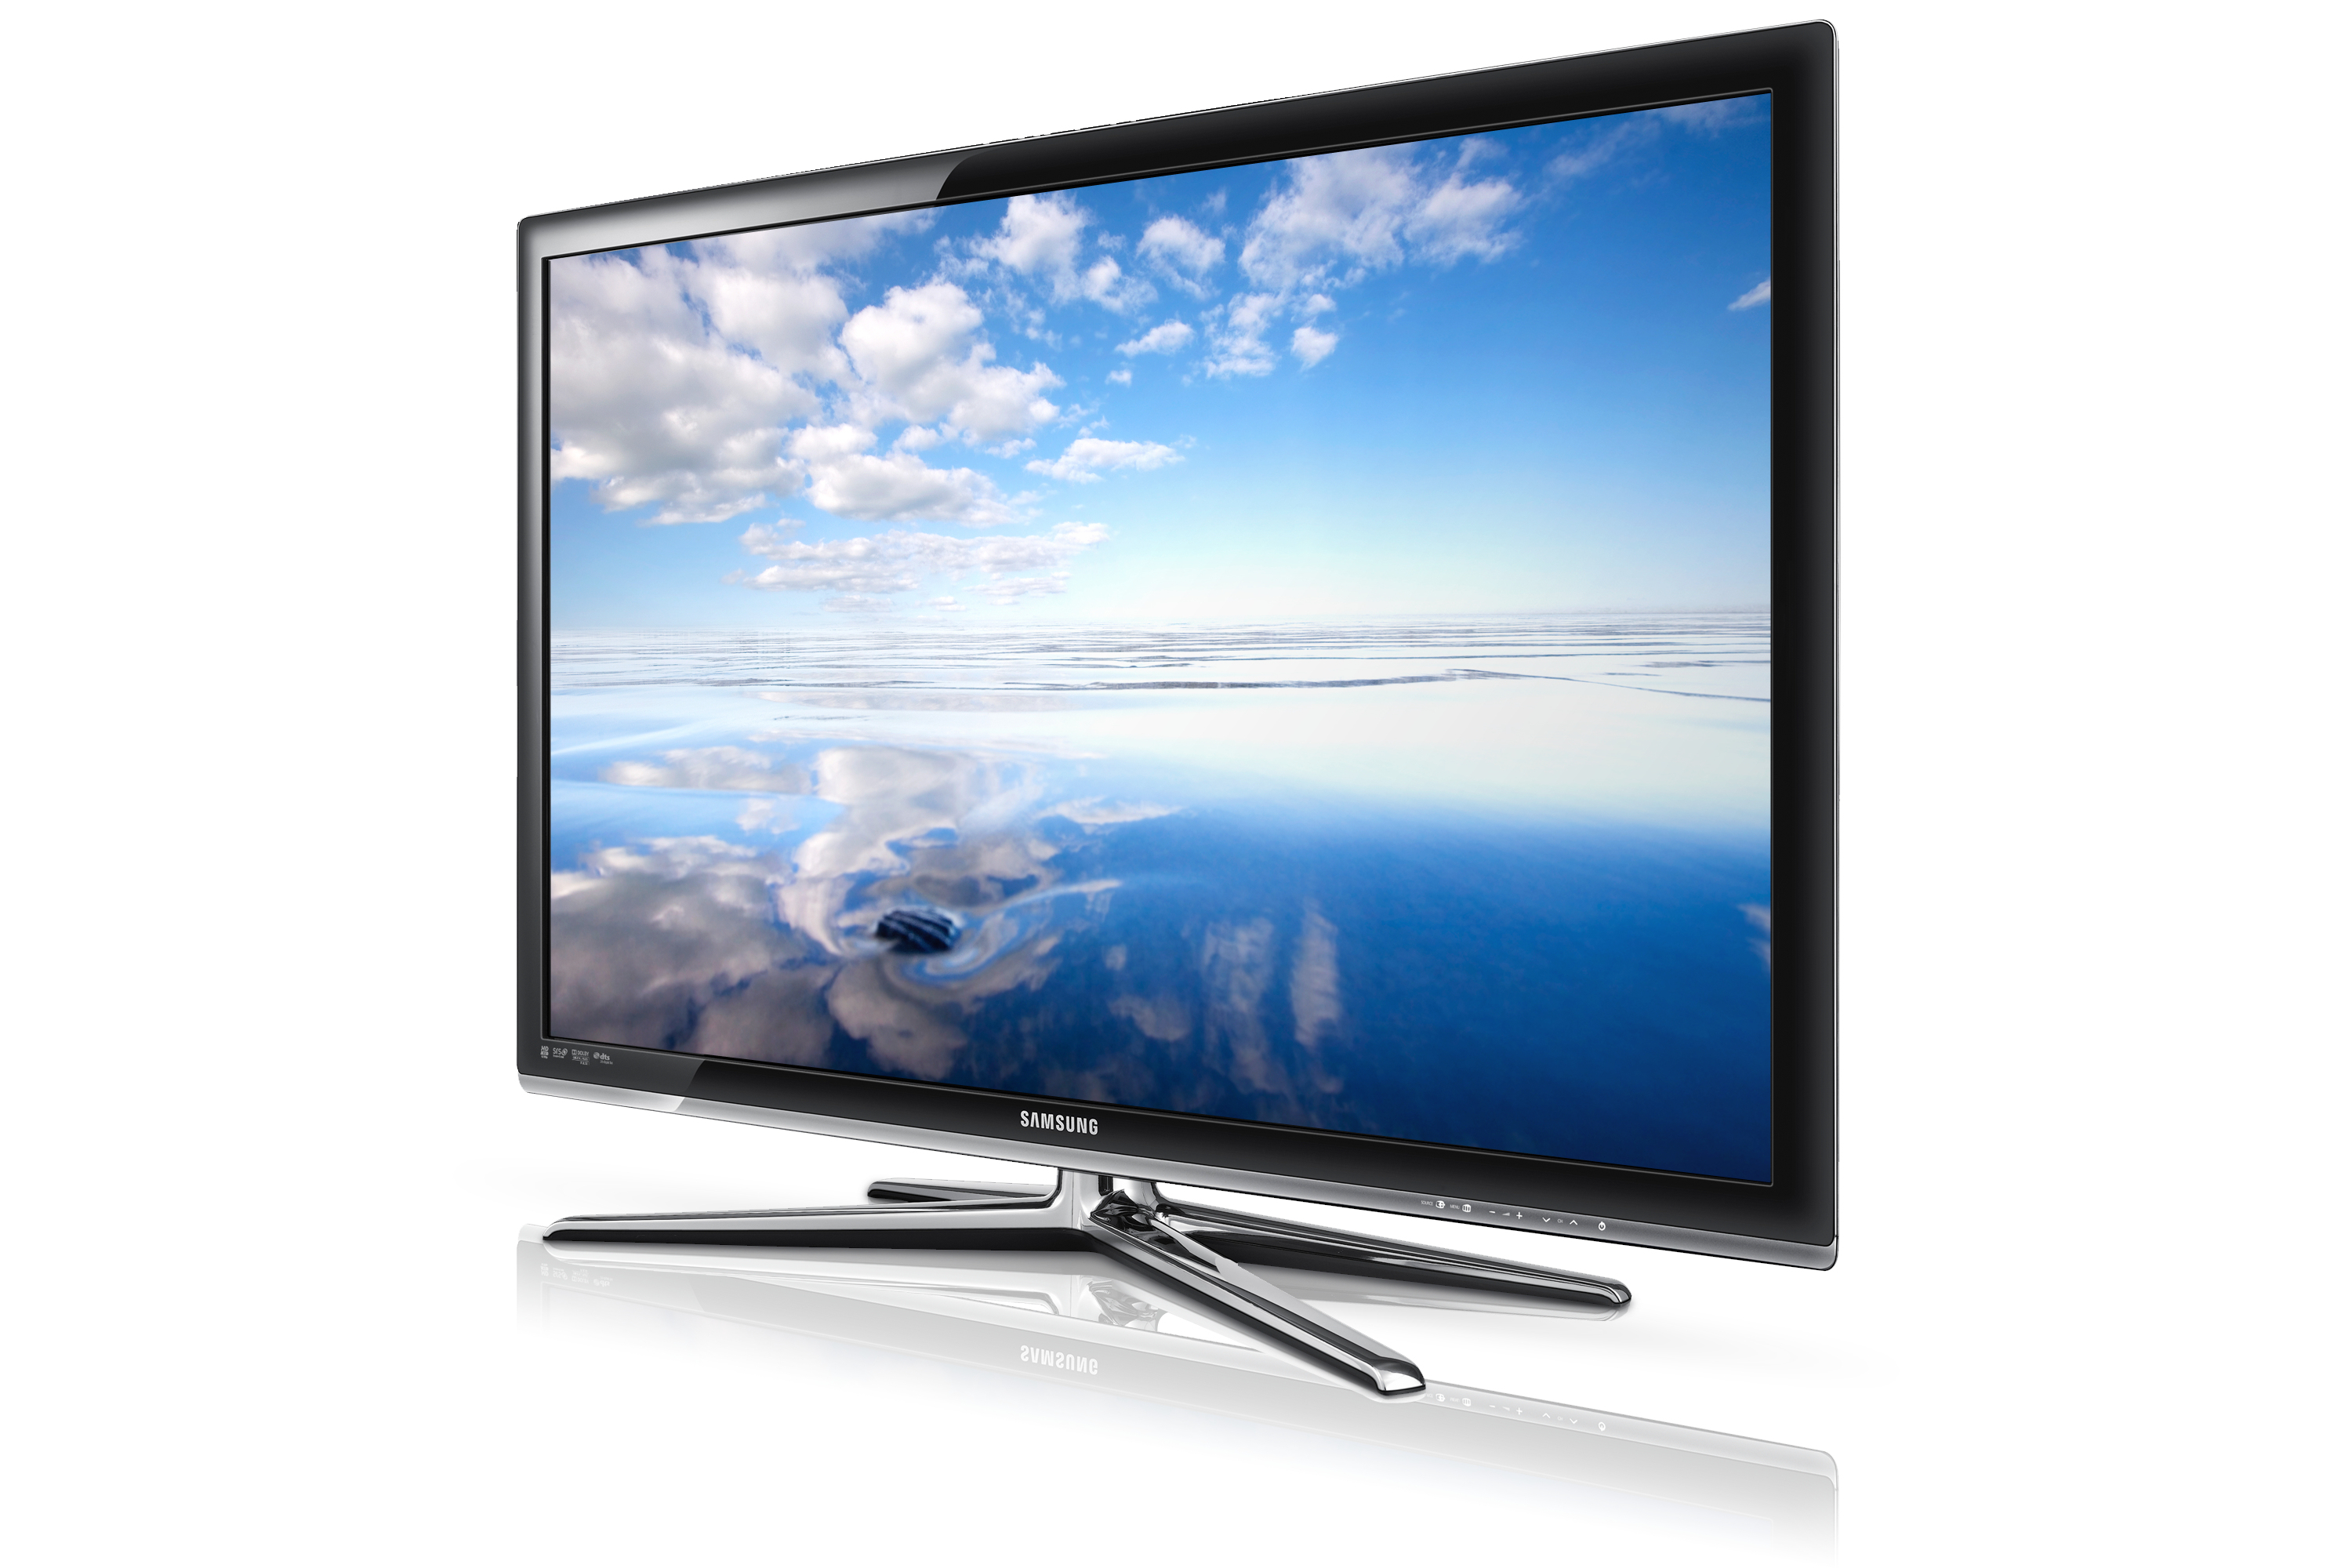 Телевизоры самсунг дешево. Samsung ue46c7000 led. Samsung 40 7000. Самсунг led 40. Телевизор самсунг 40ue5000.